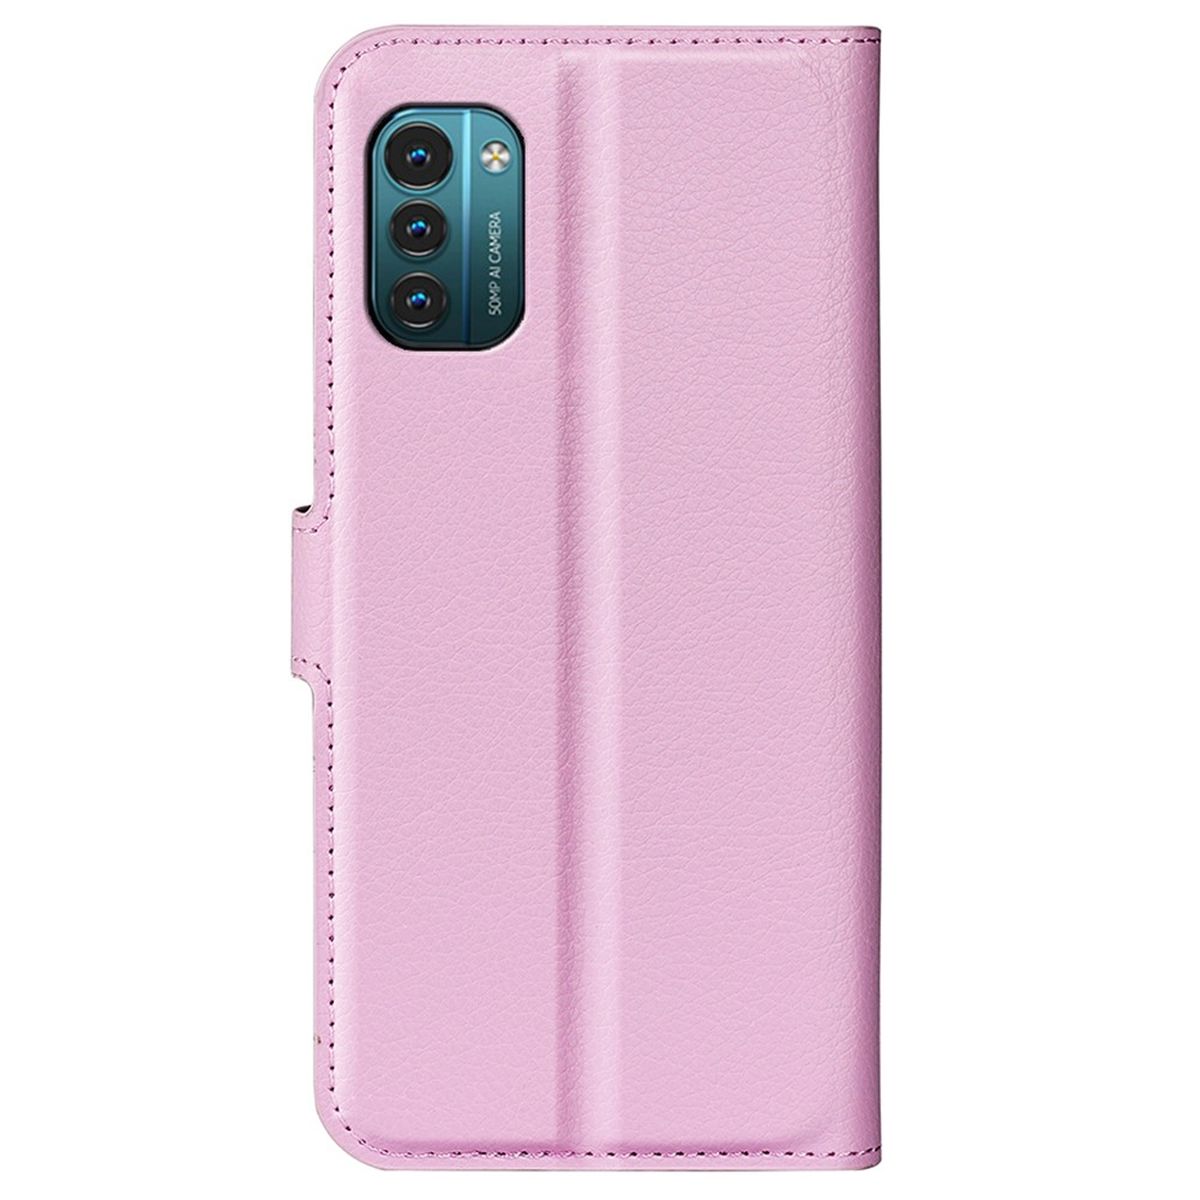 Hülle für Nokia G21/G11 Handyhülle Flip Case Schutzhülle Cover Tasche Etui Rosa